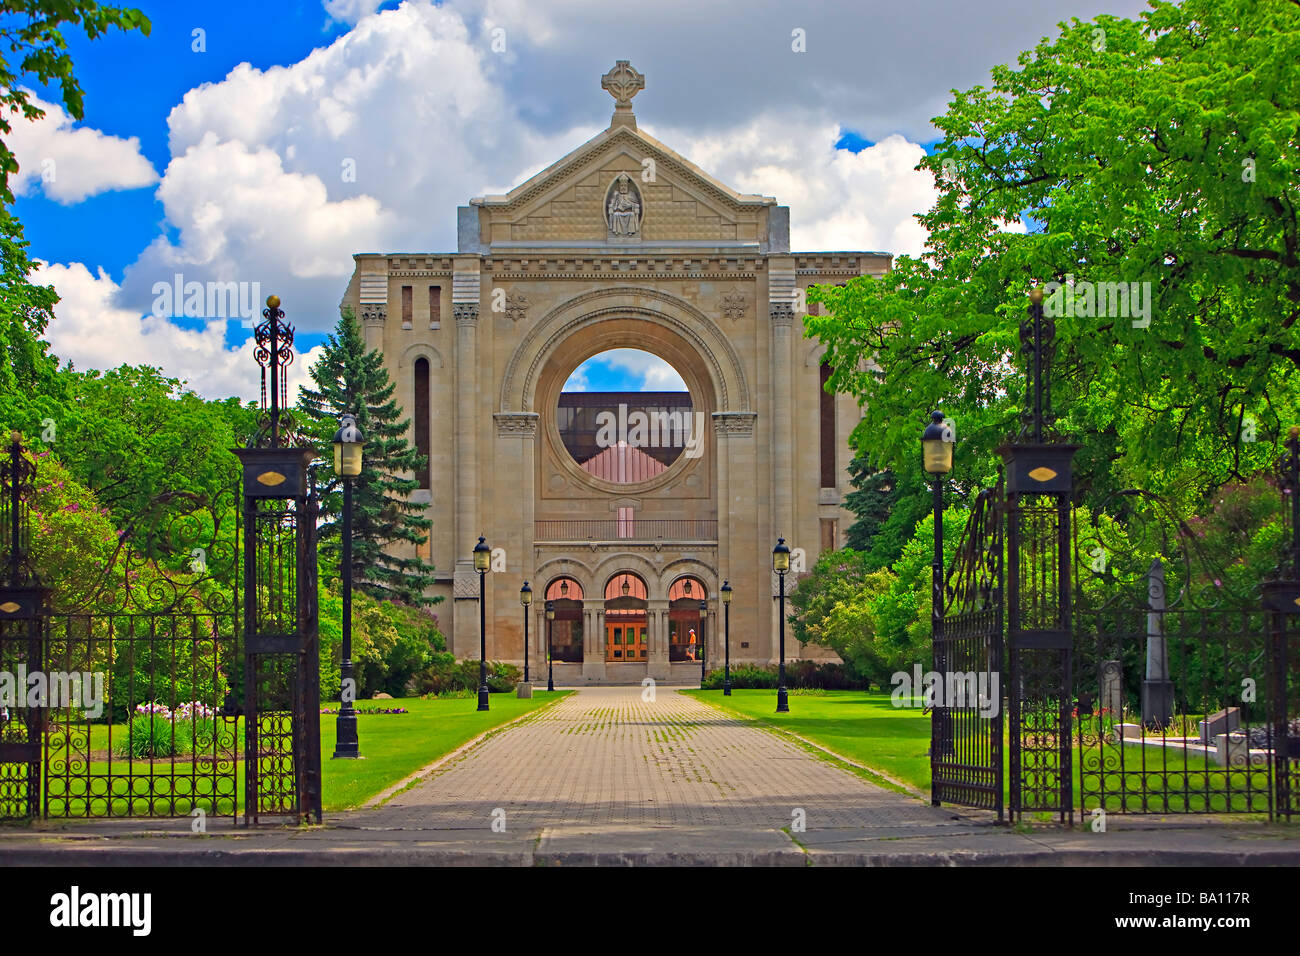 Façade de la cathédrale de Saint-Boniface, dans le vieux quartier français de Saint-Boniface à Winnipeg Manitoba Canada. Banque D'Images